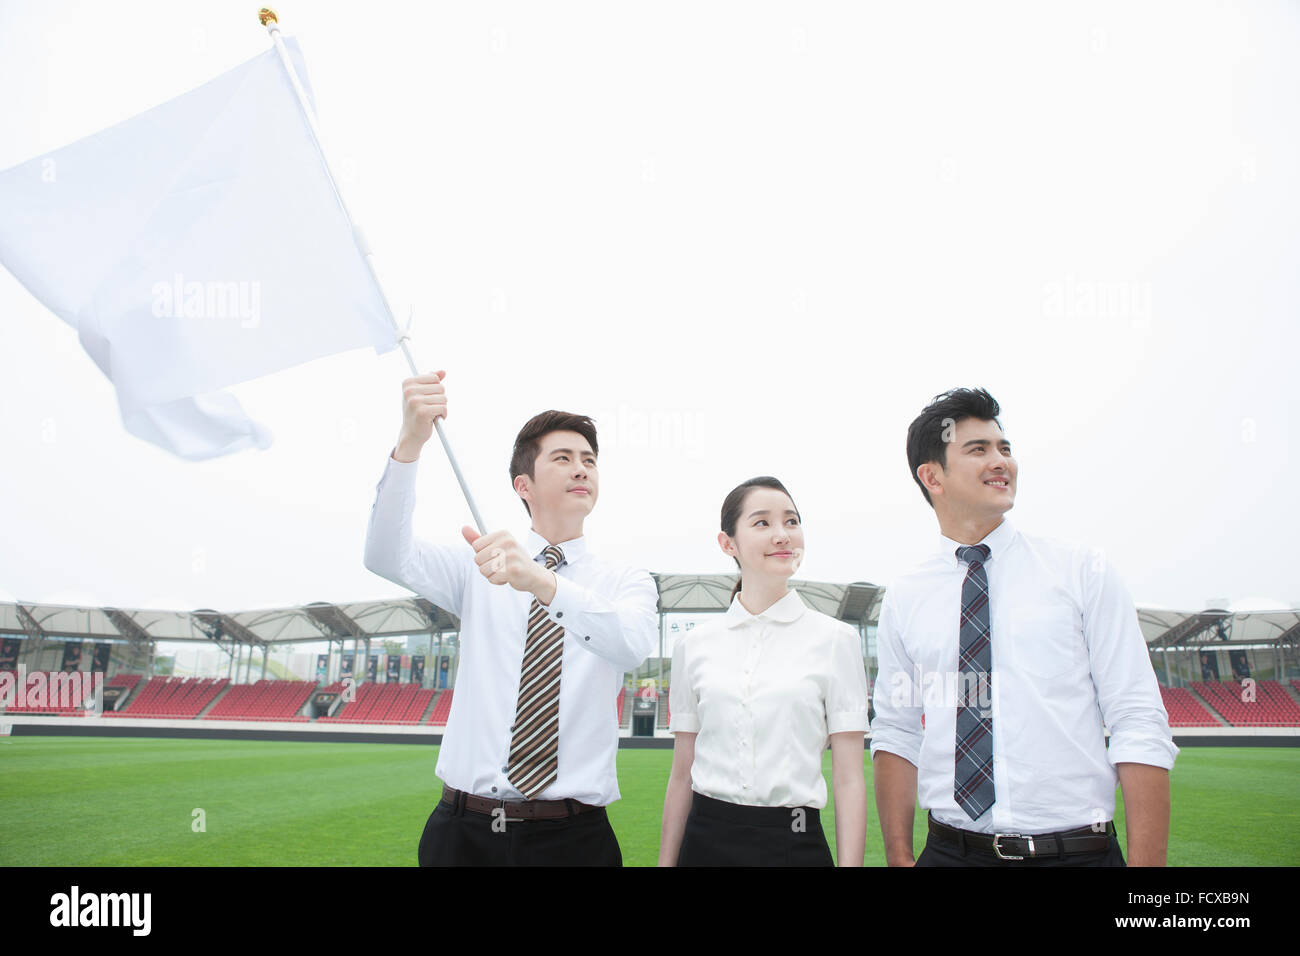 Drei junge Erwachsene in Business-Kleidung am Sportplatz hält eine weiße Fahne und starrte nach oben Stockfoto